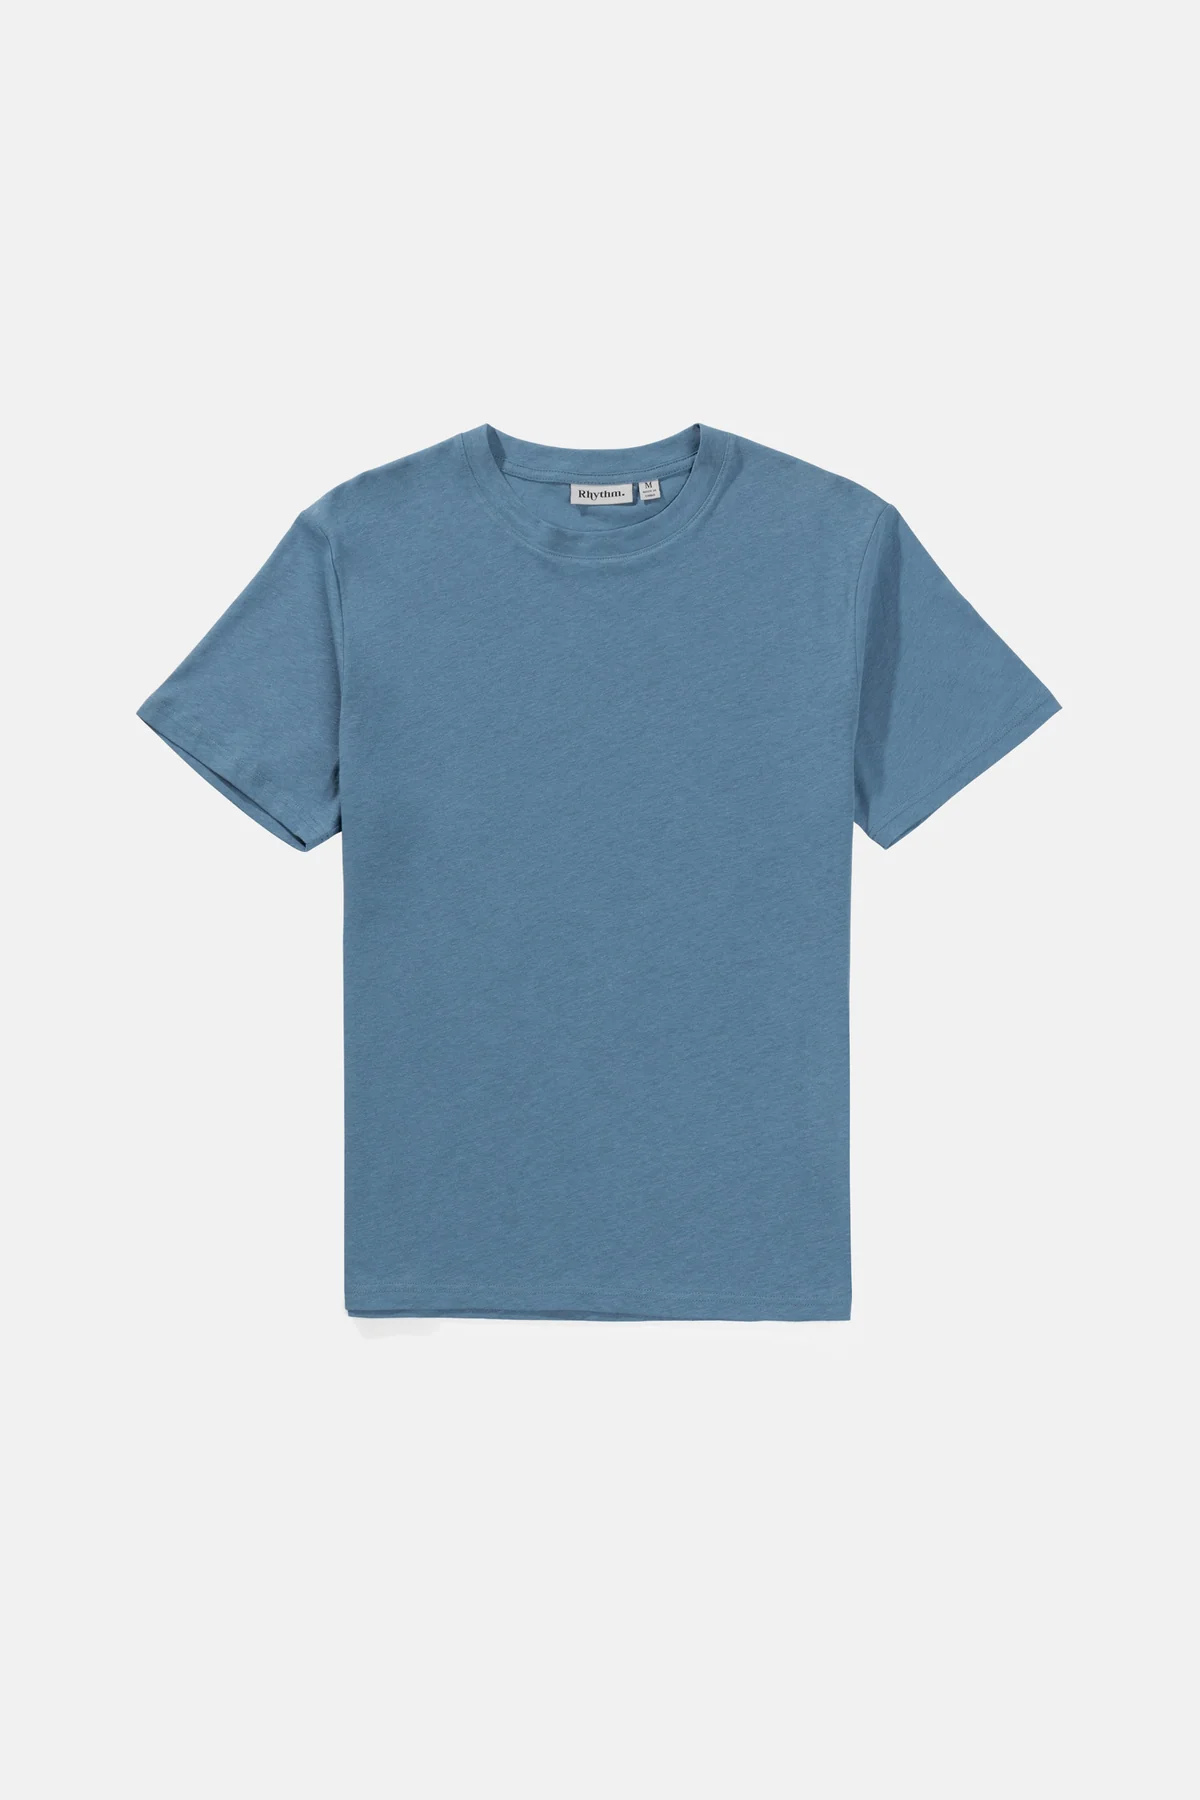 Rhythm Livin Linen T-Shirt - Mineral Blue